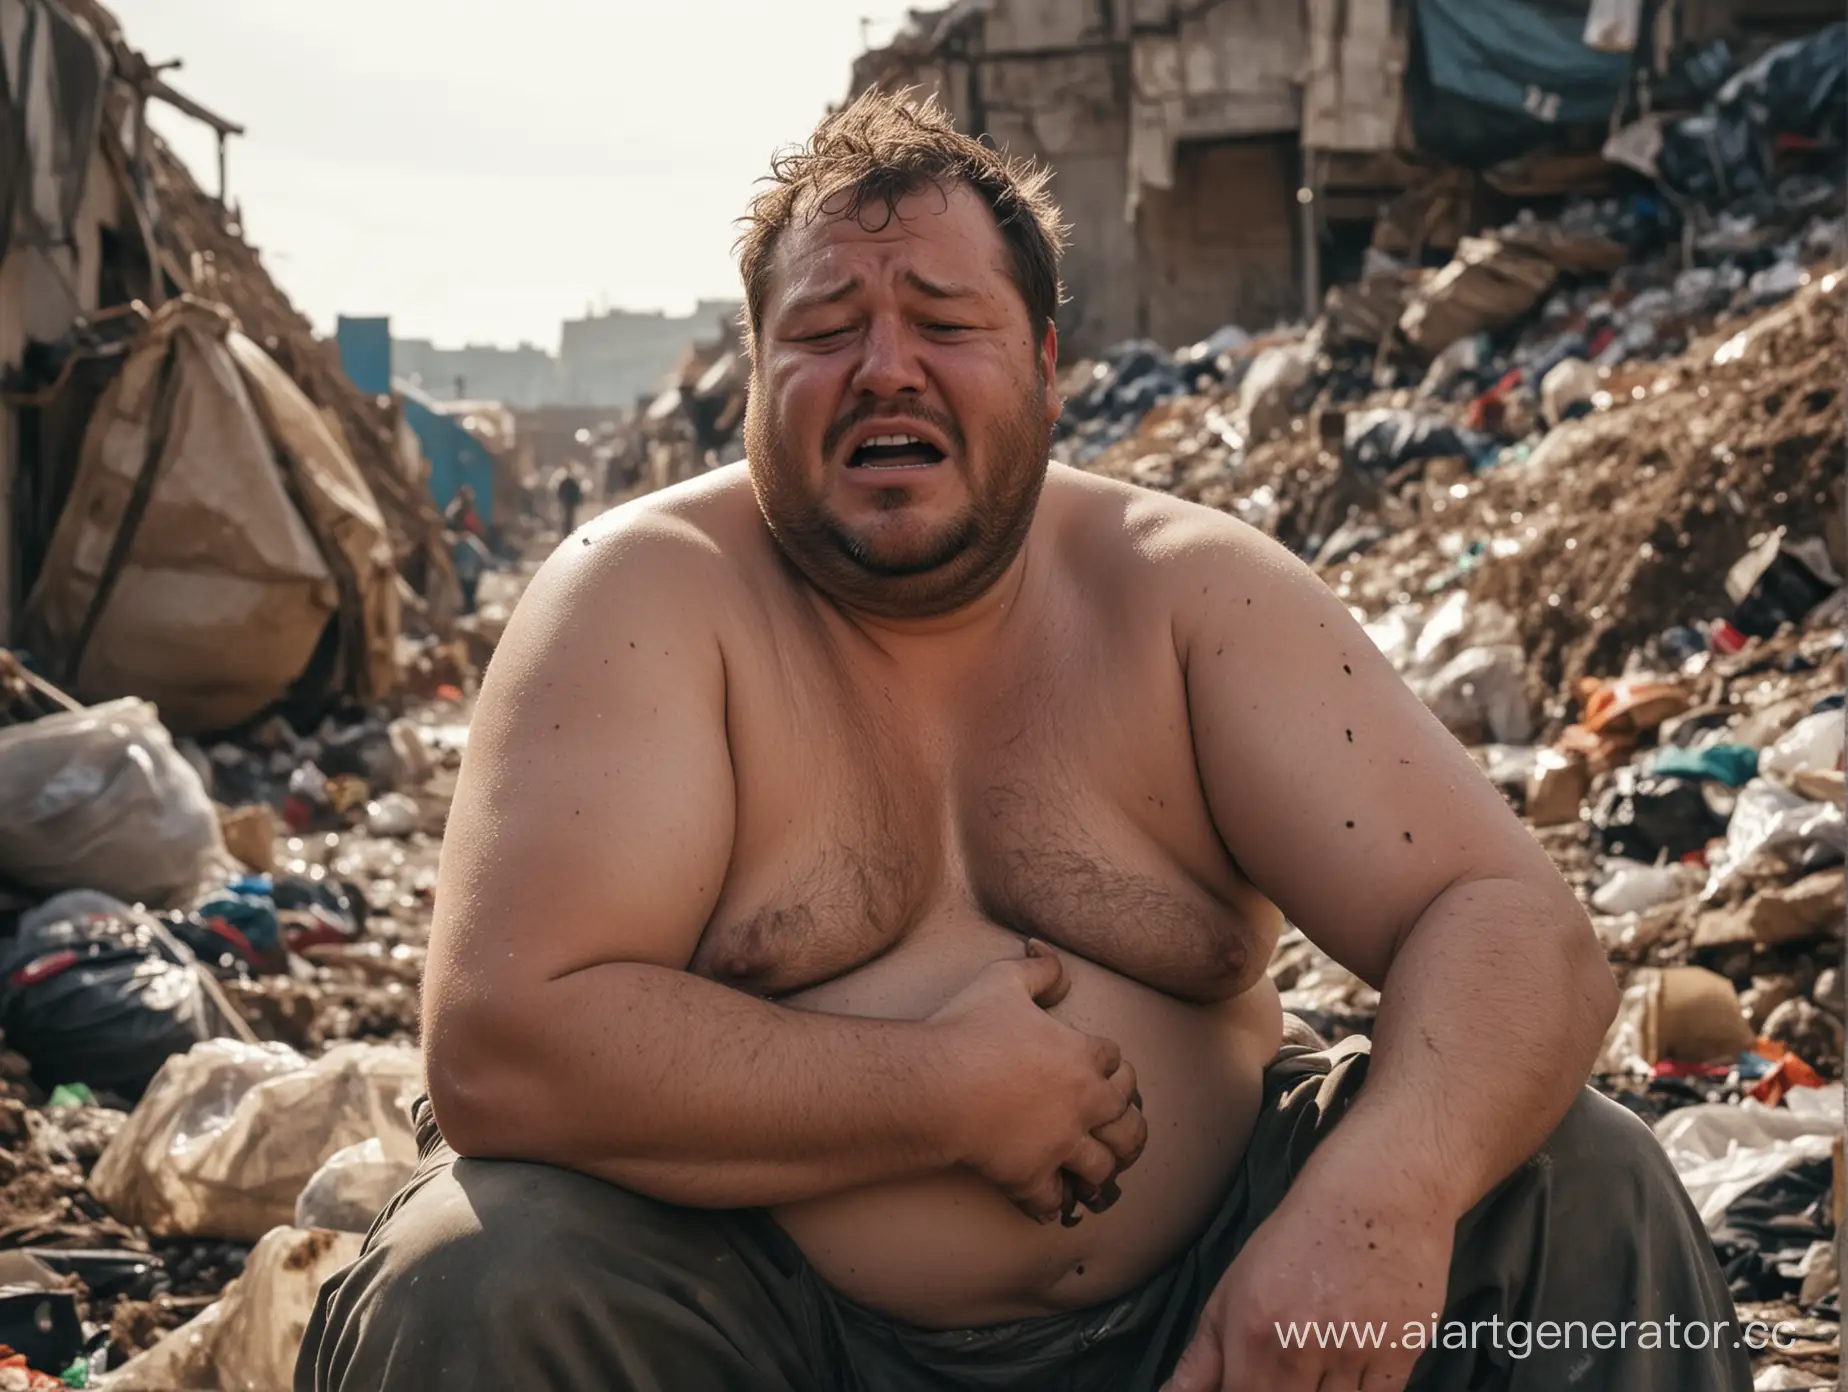 толстый и чумазый человек сидит в свалке мусора, и плачет, также видно подробно его чумазое лицо